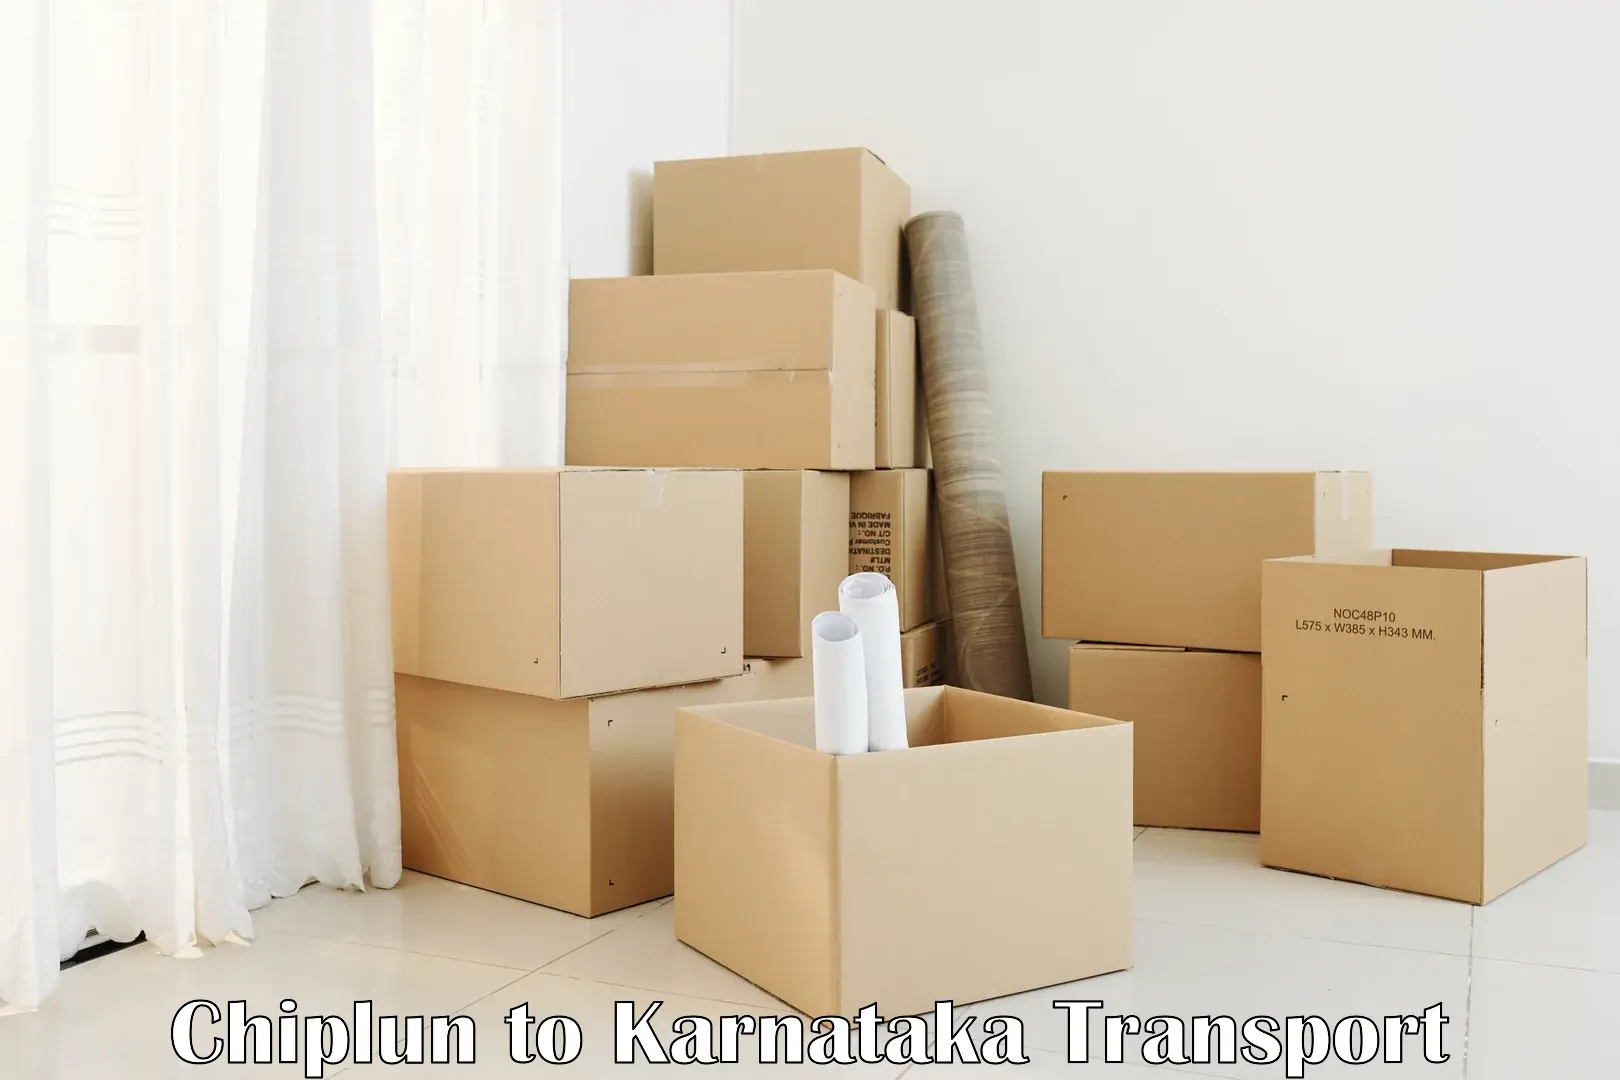 Furniture transport service Chiplun to Talikoti